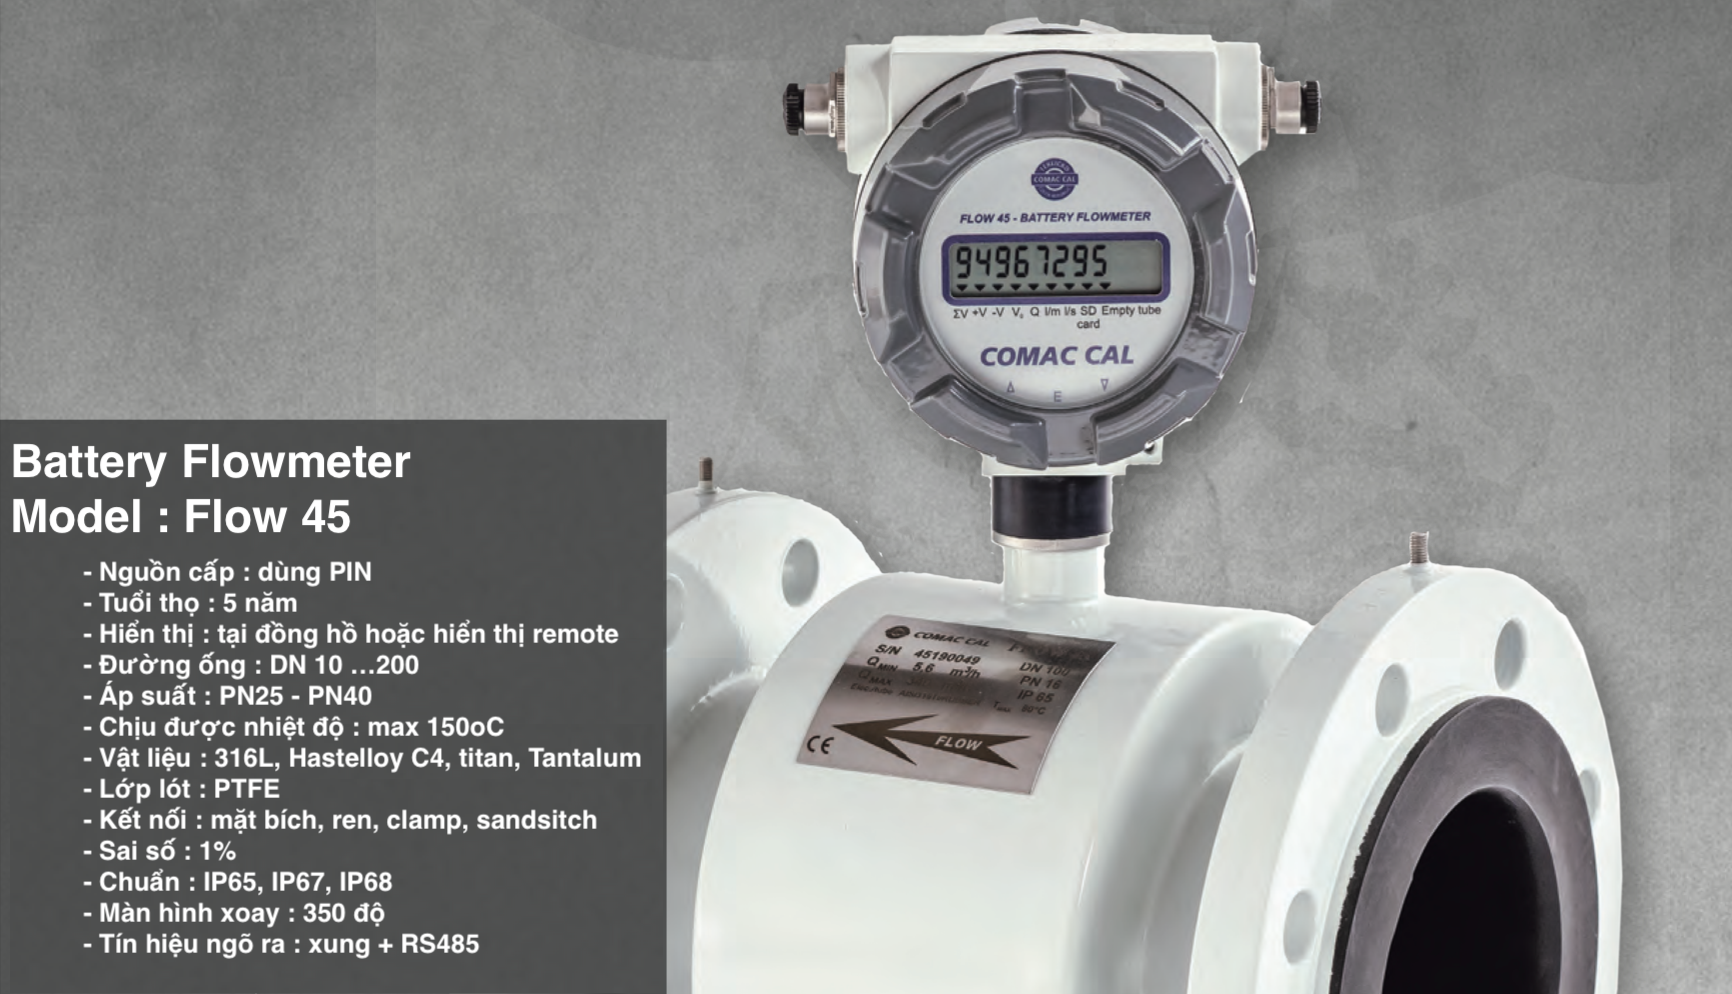 Đồng hồ đo lưu lượng sử dụng PIN | Flow 45 - Comac Cal